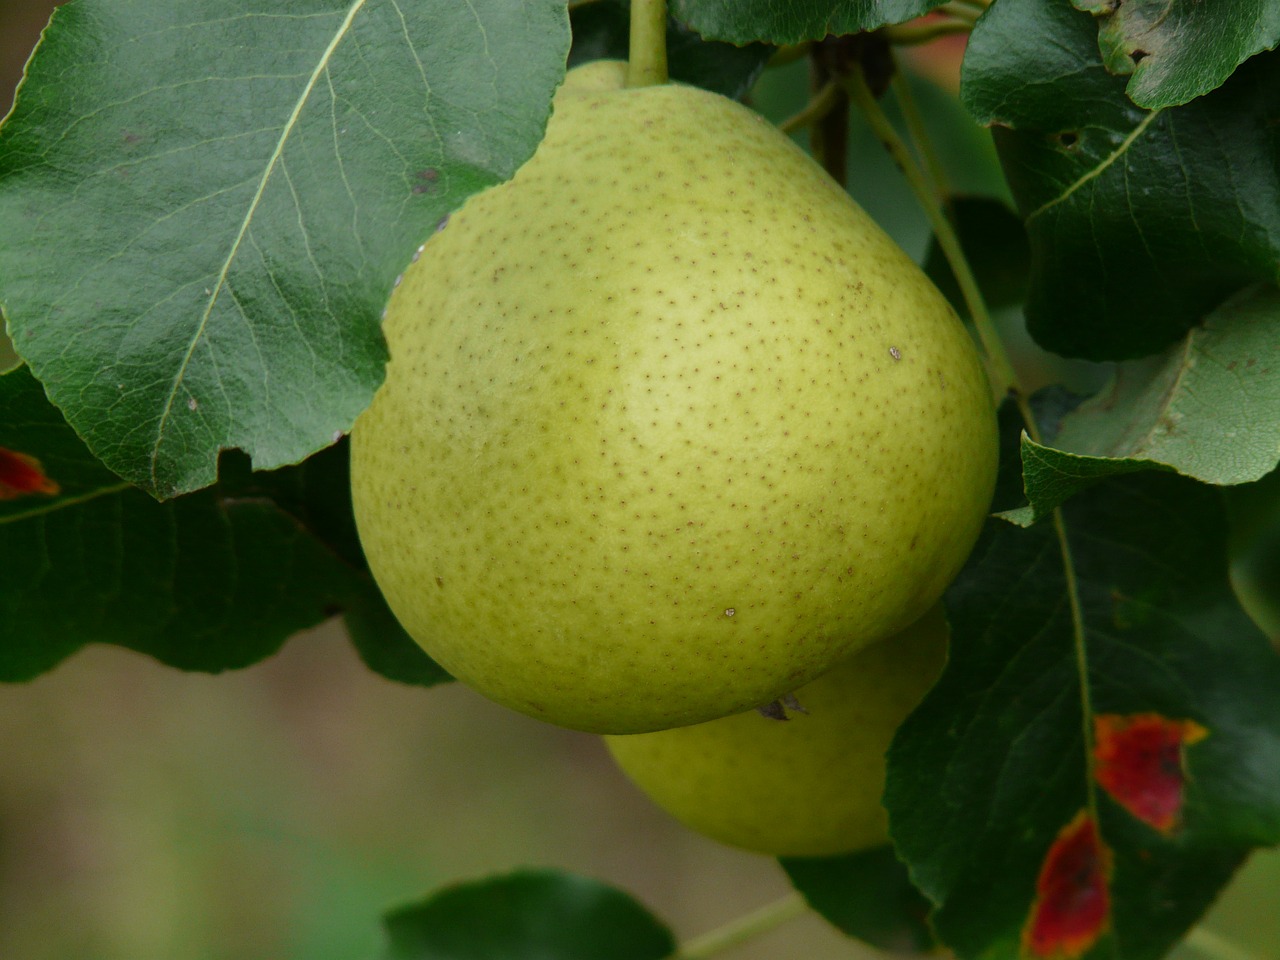 Pear Sundaes